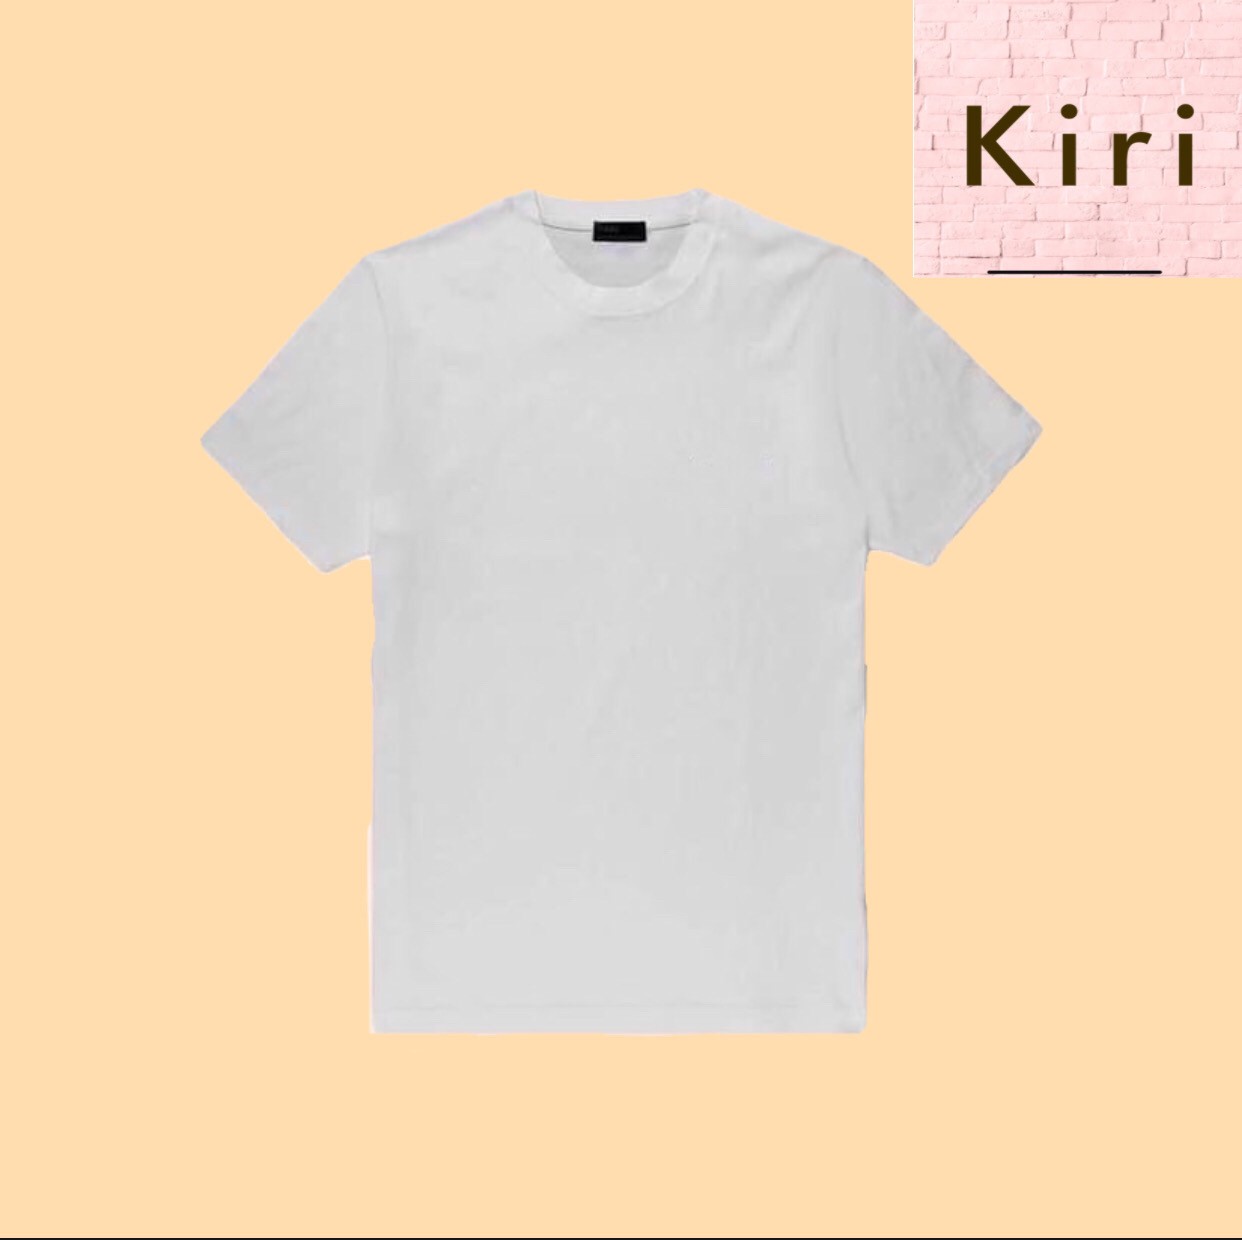 เสื้อยืดผู้ชาย เสื้อยืดคอกลม เสื้อยืดสีพื้น เสื้อยืดสีขาว เสื้อยืดสีดำ เสื้อคอกลม (Kiri Tshirt) ยืดเปล่า